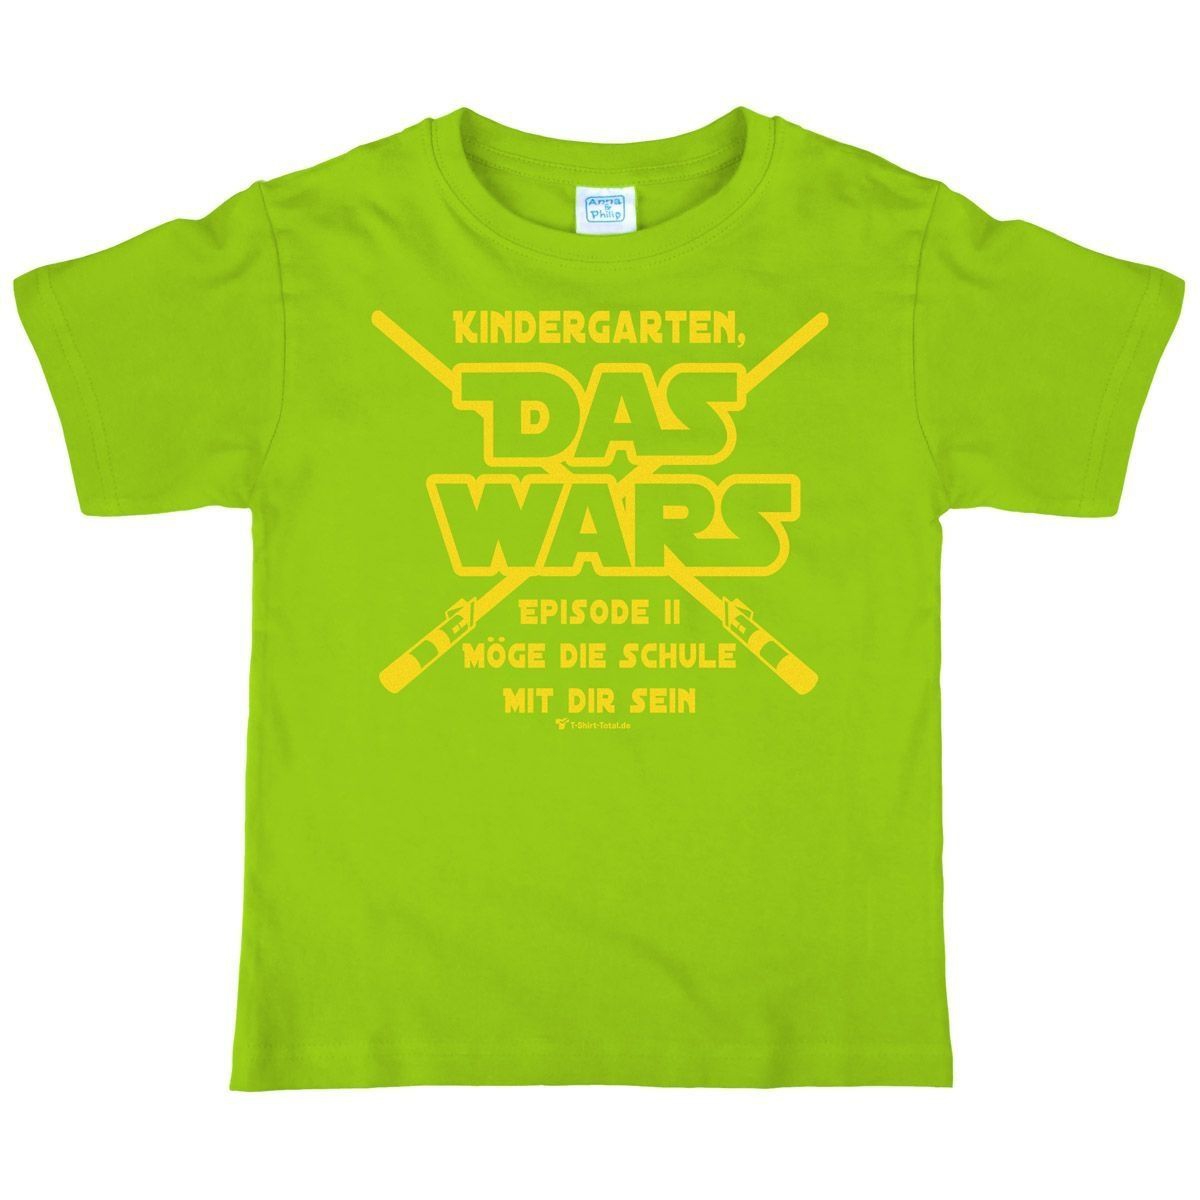 Das wars Kindergarten Kinder T-Shirt hellgrün 122 / 128